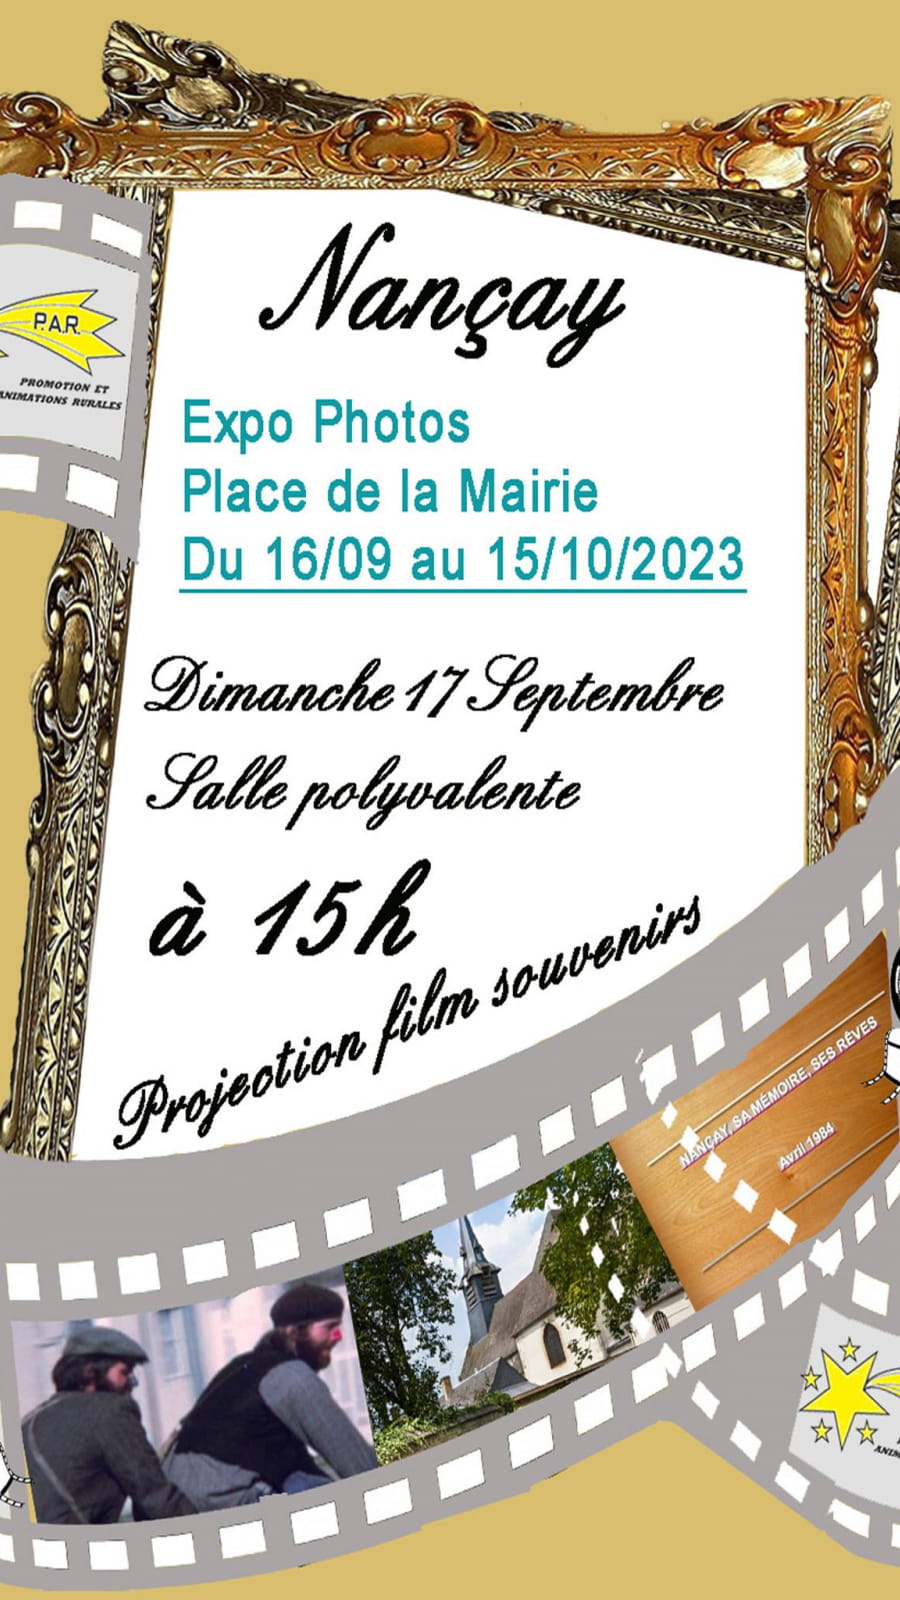 Expo photos et projection film souvenirs 